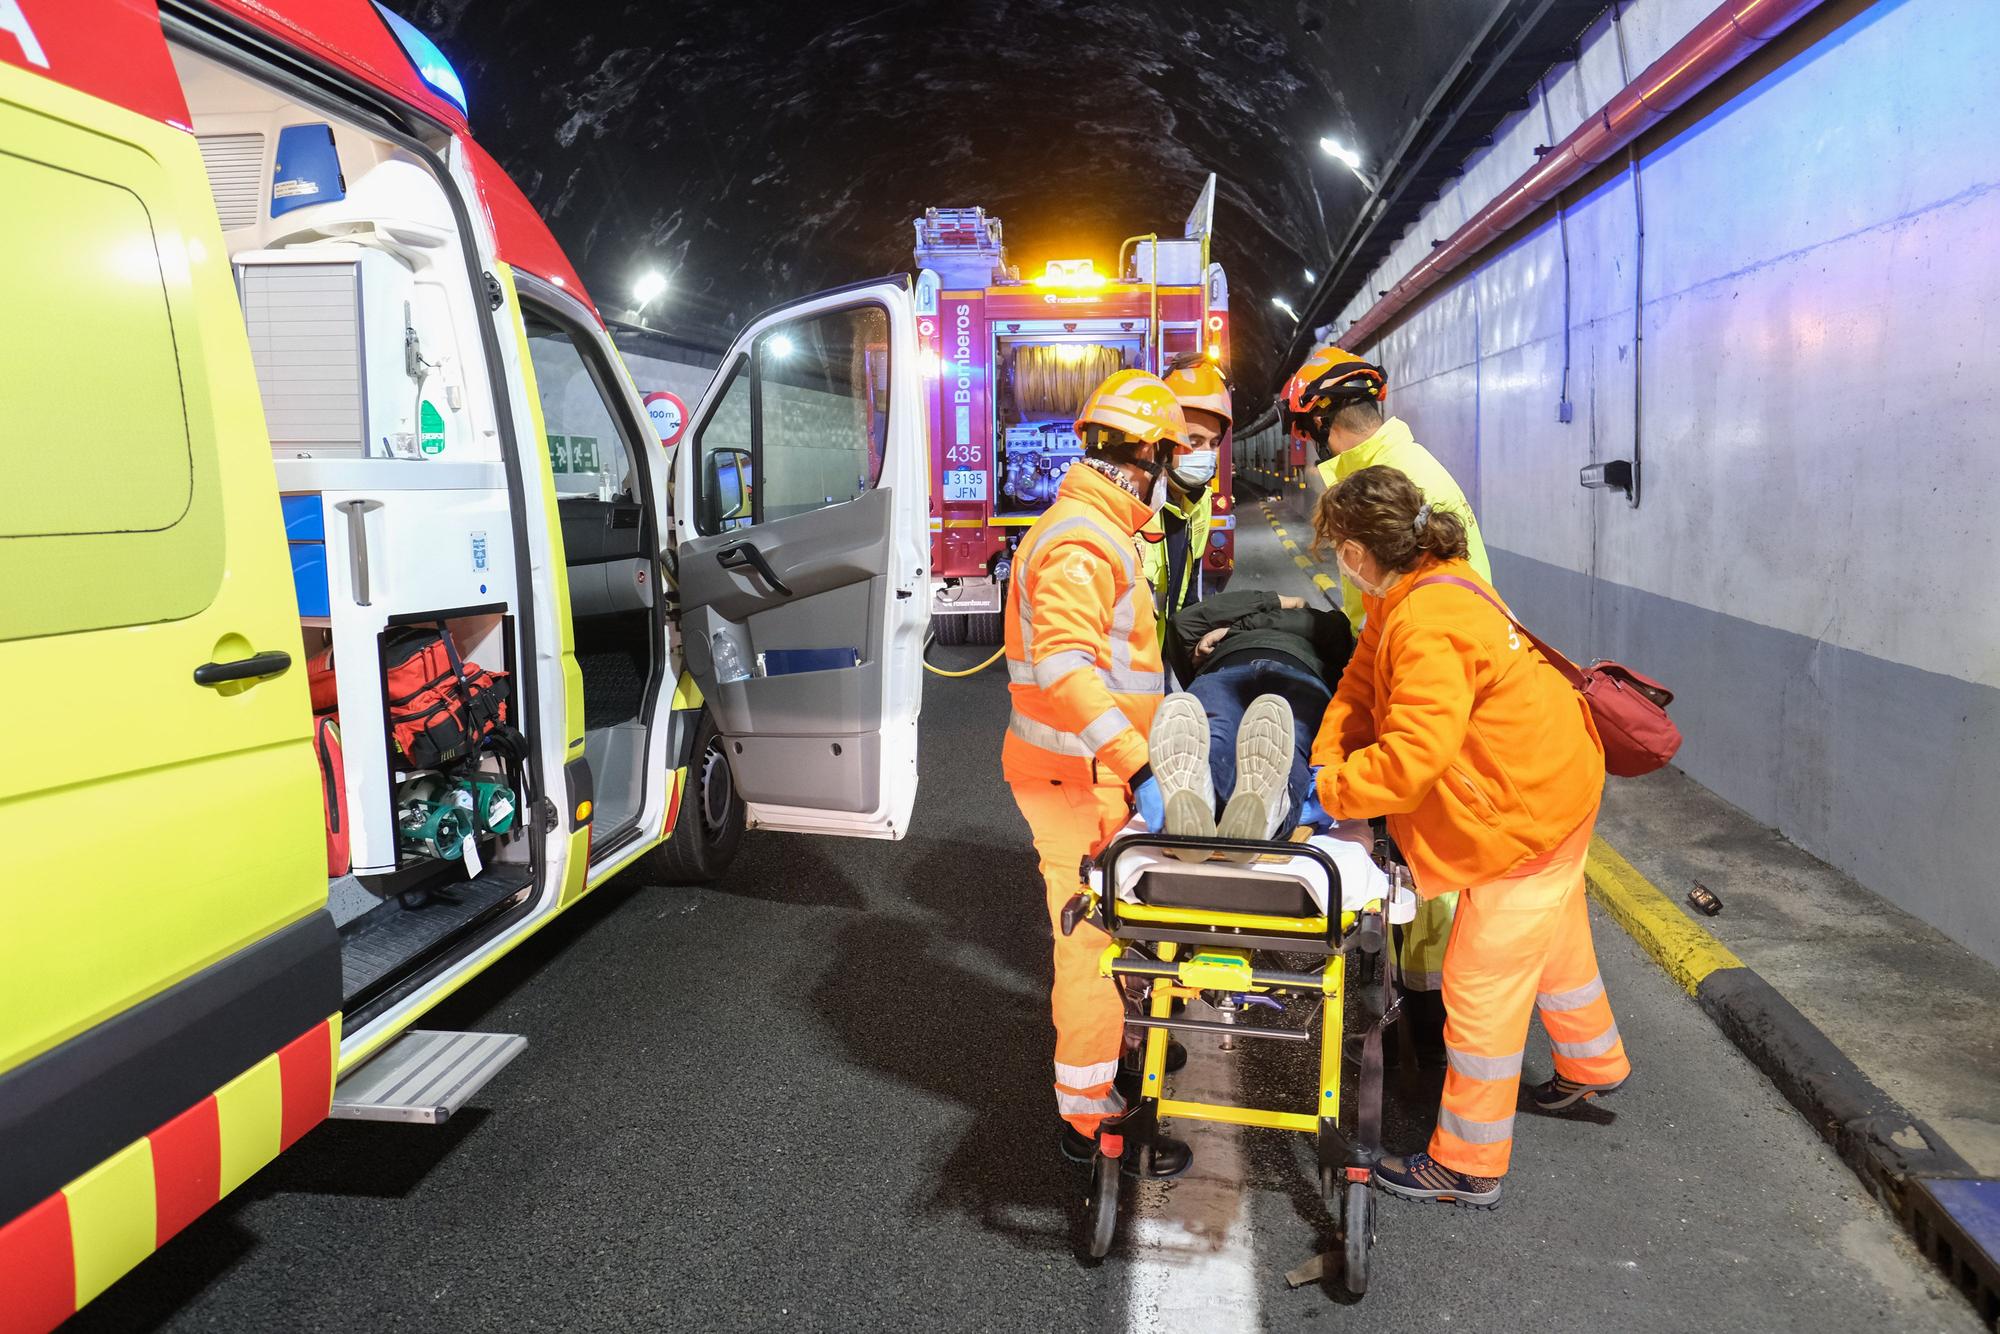 Accidente con incendio y dos heridos graves en el túnel de Villena: así ha sido el simulacro en la autovía A-31